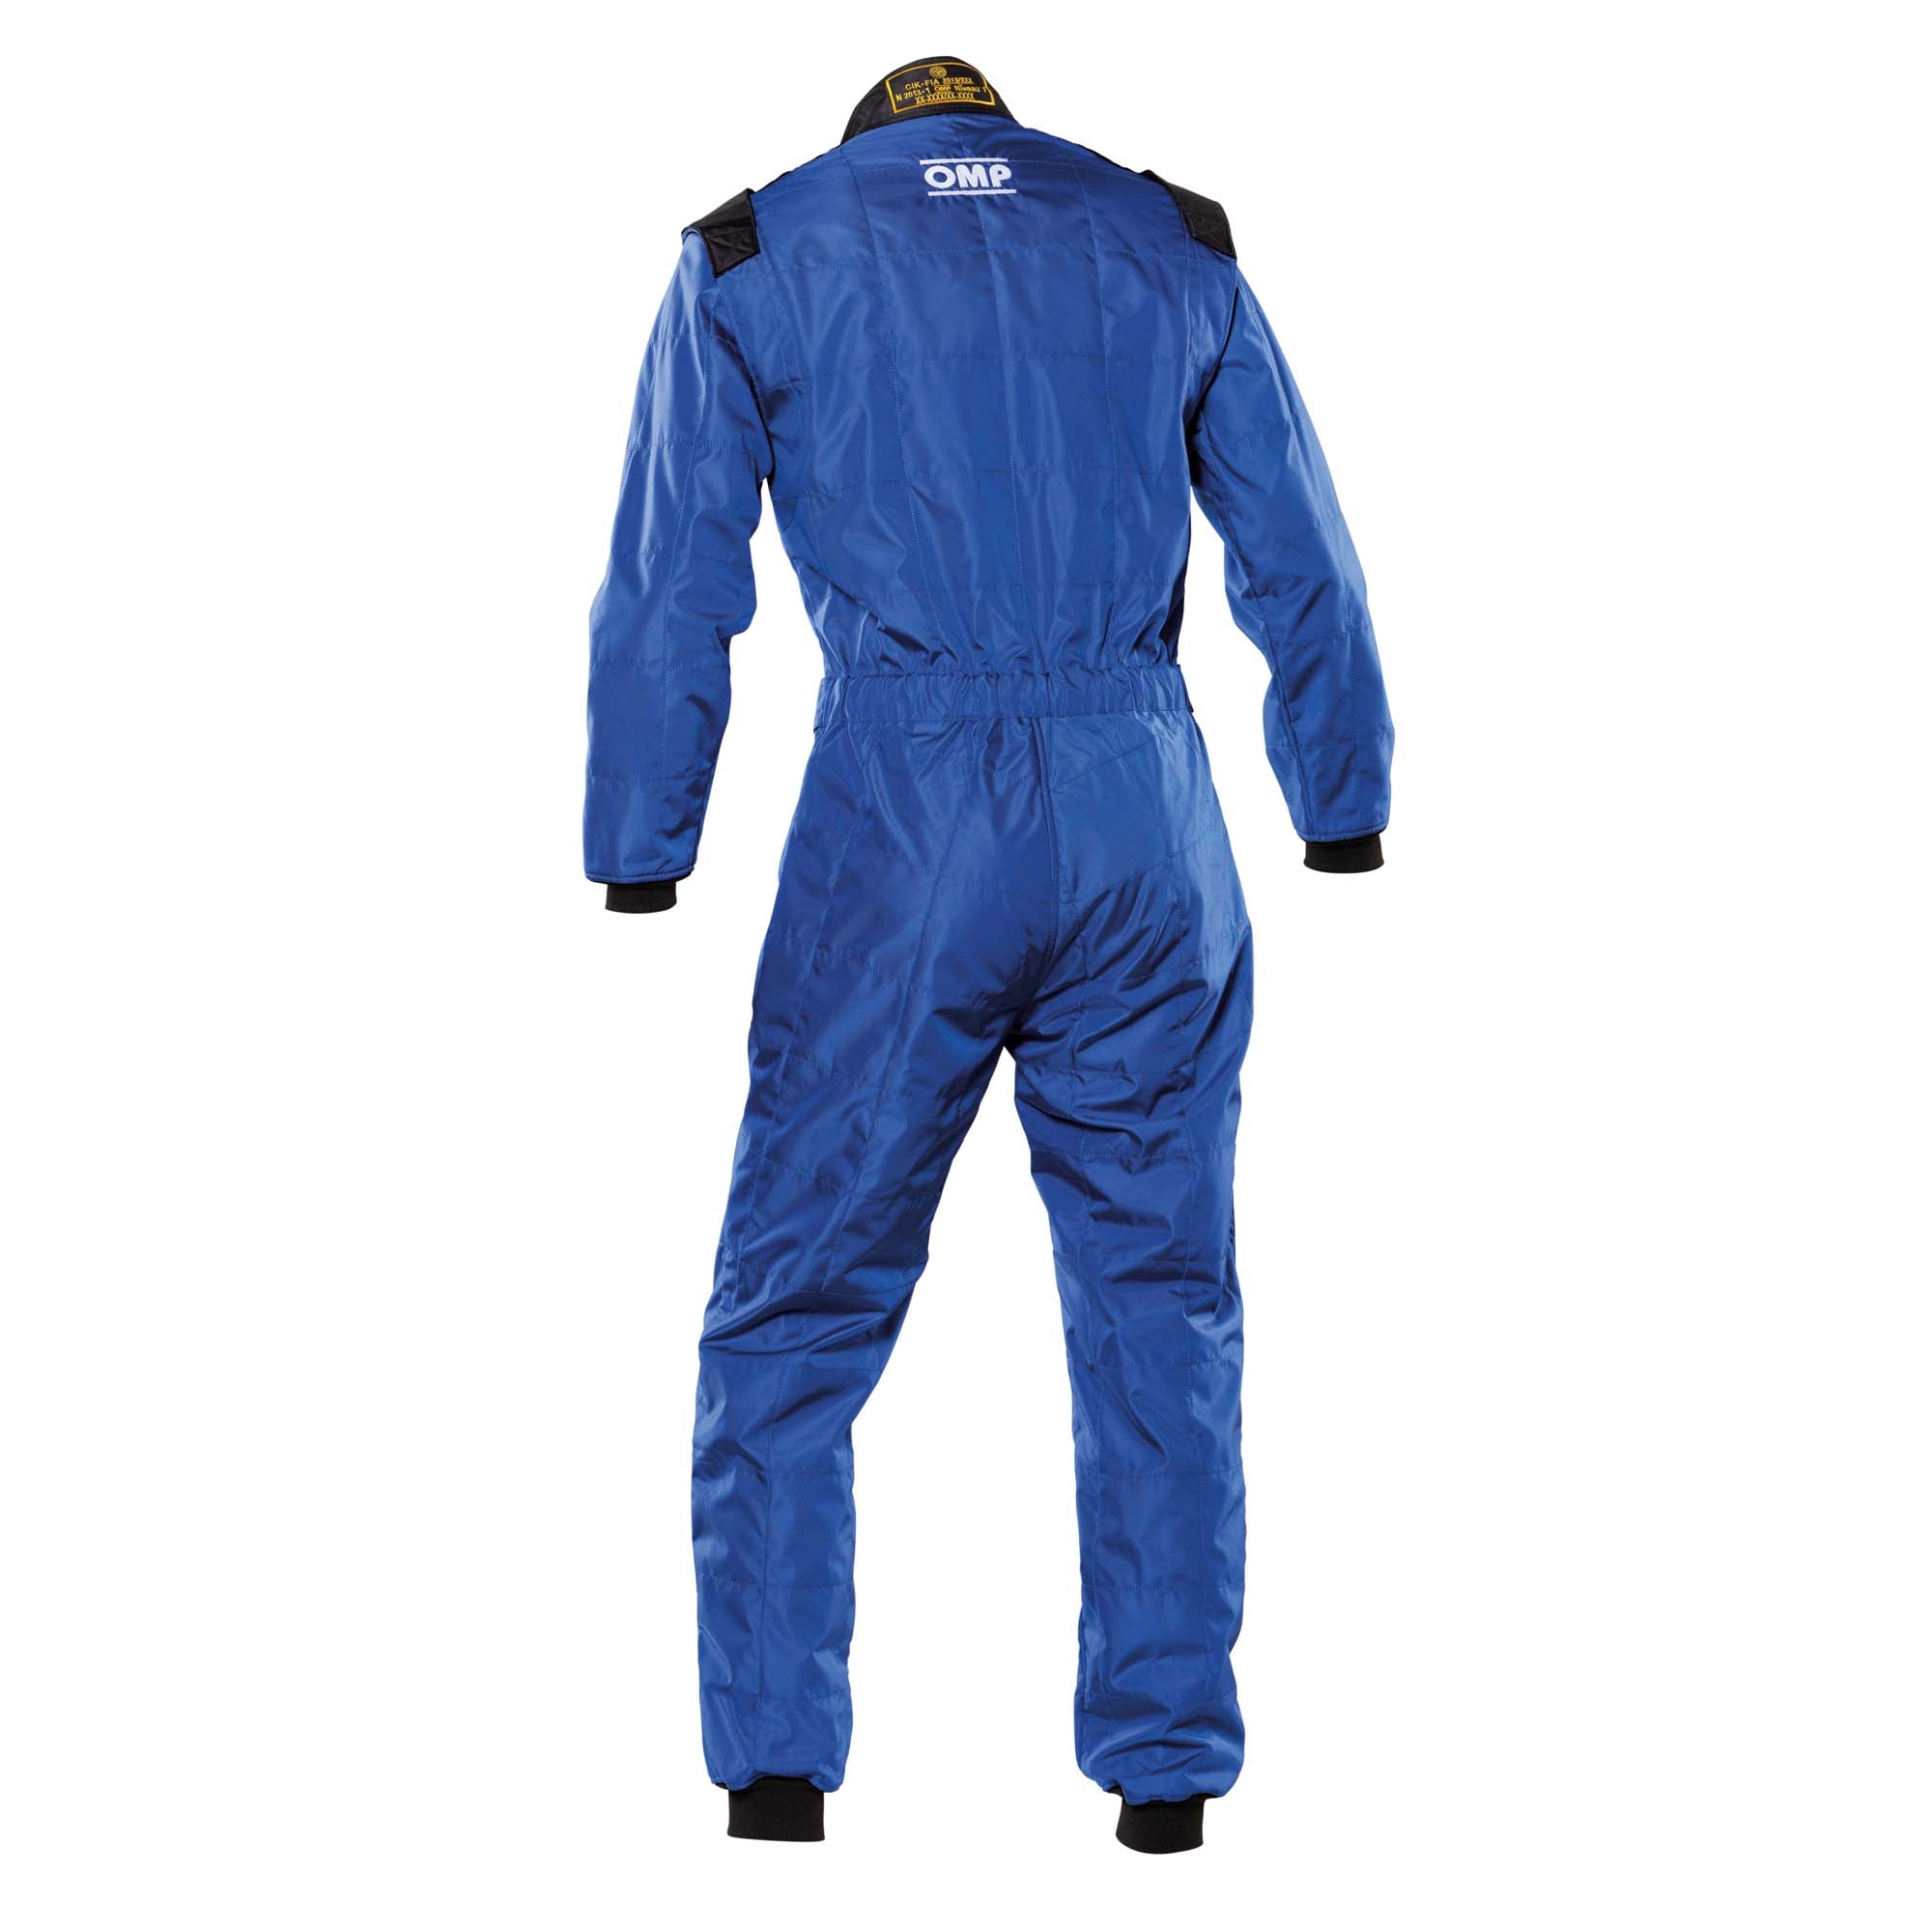 Back of OMP KS-4 Kart Racing Suit - Blue